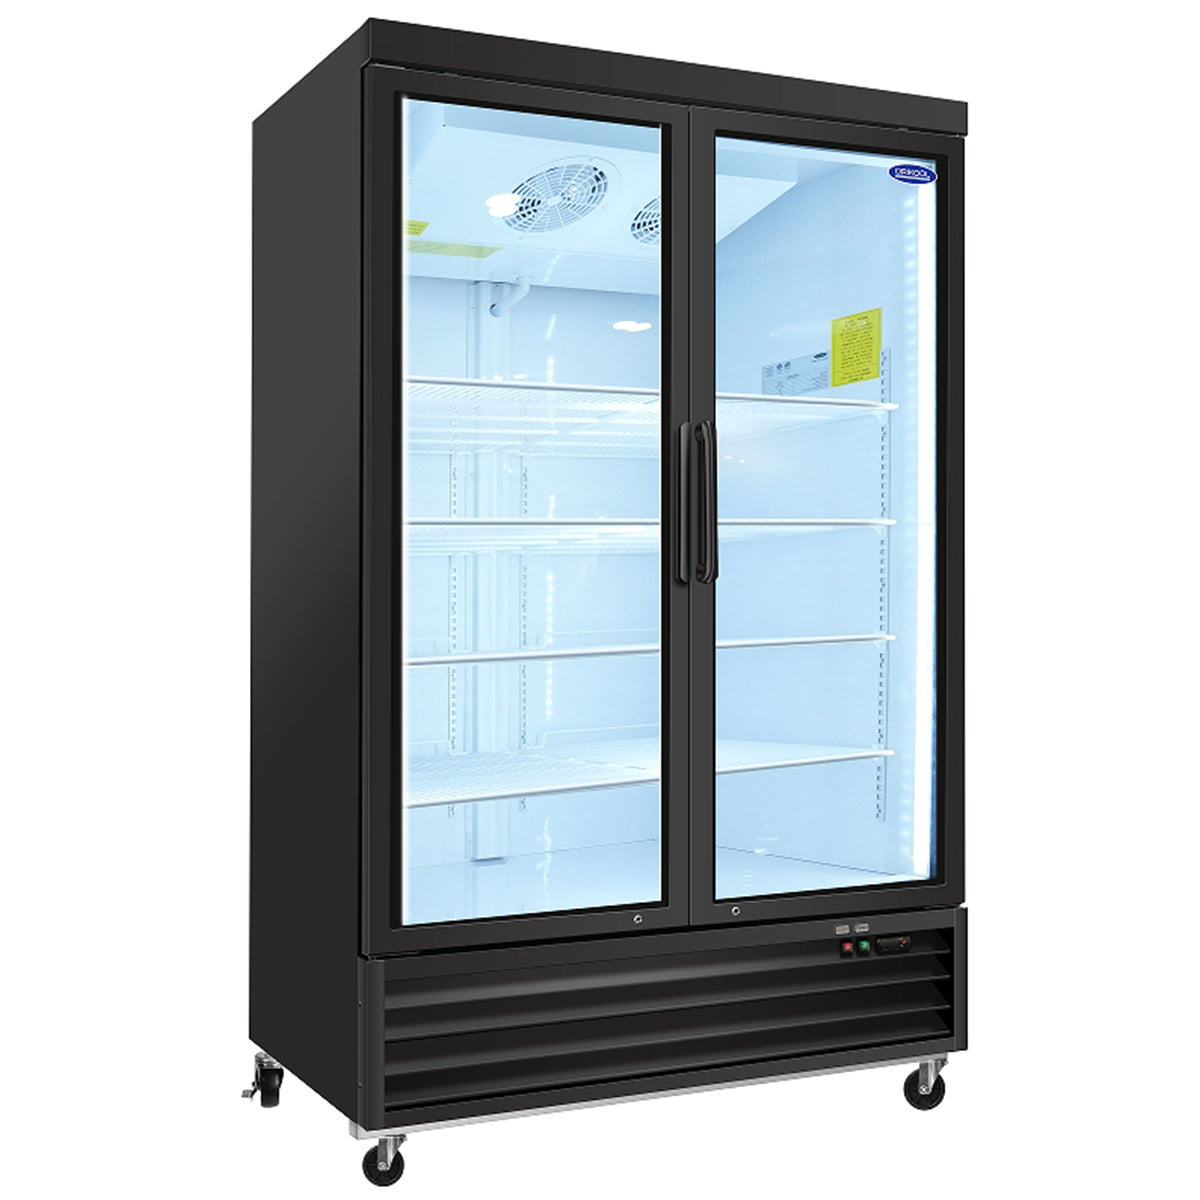 ORIKOOL SD1390FT 54" Double Swing Glass Door Merchandiser Freezer 44.7 cu.ft. Commercial Freezer, Black